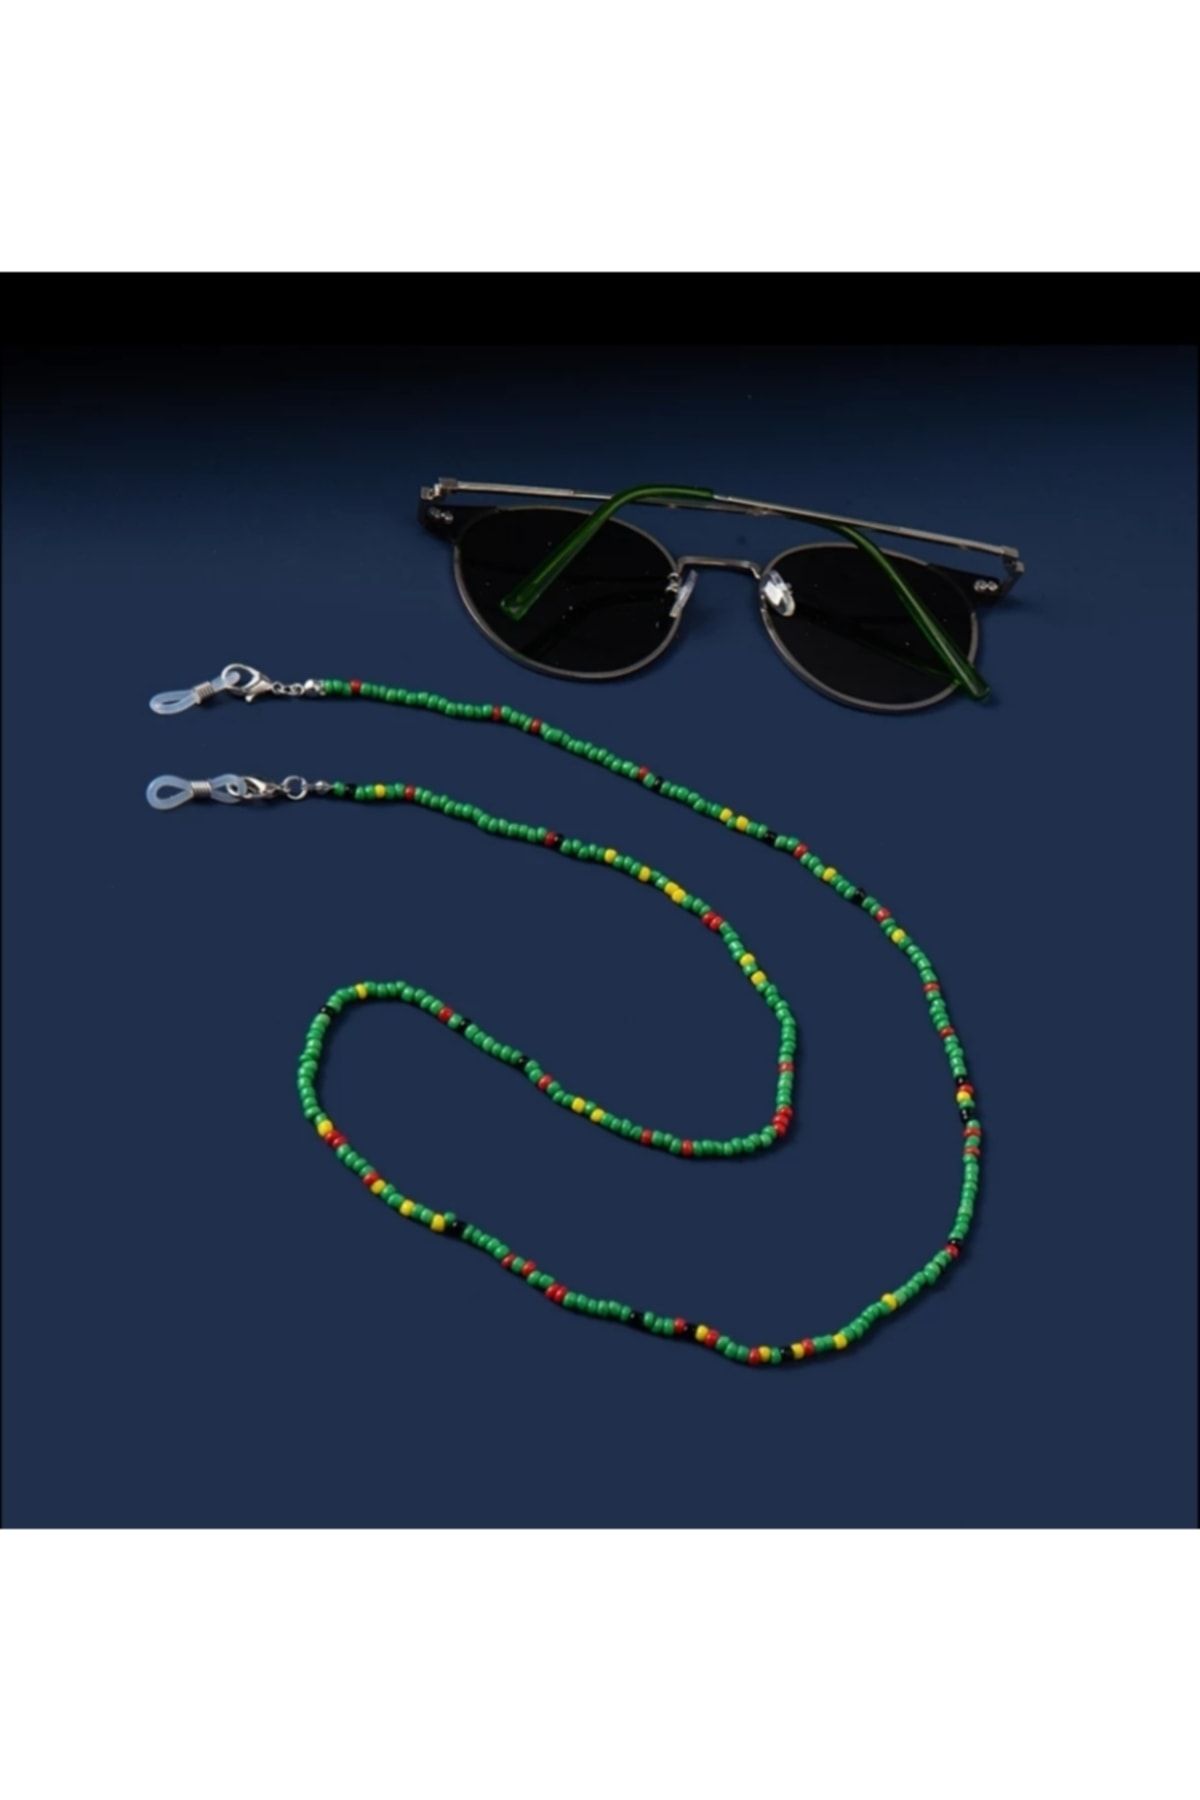 platin hediyelik Kadın Boncuklu Güneş Gözlüğü Zinciri Gözlük İpi Askısı Aksesuarı